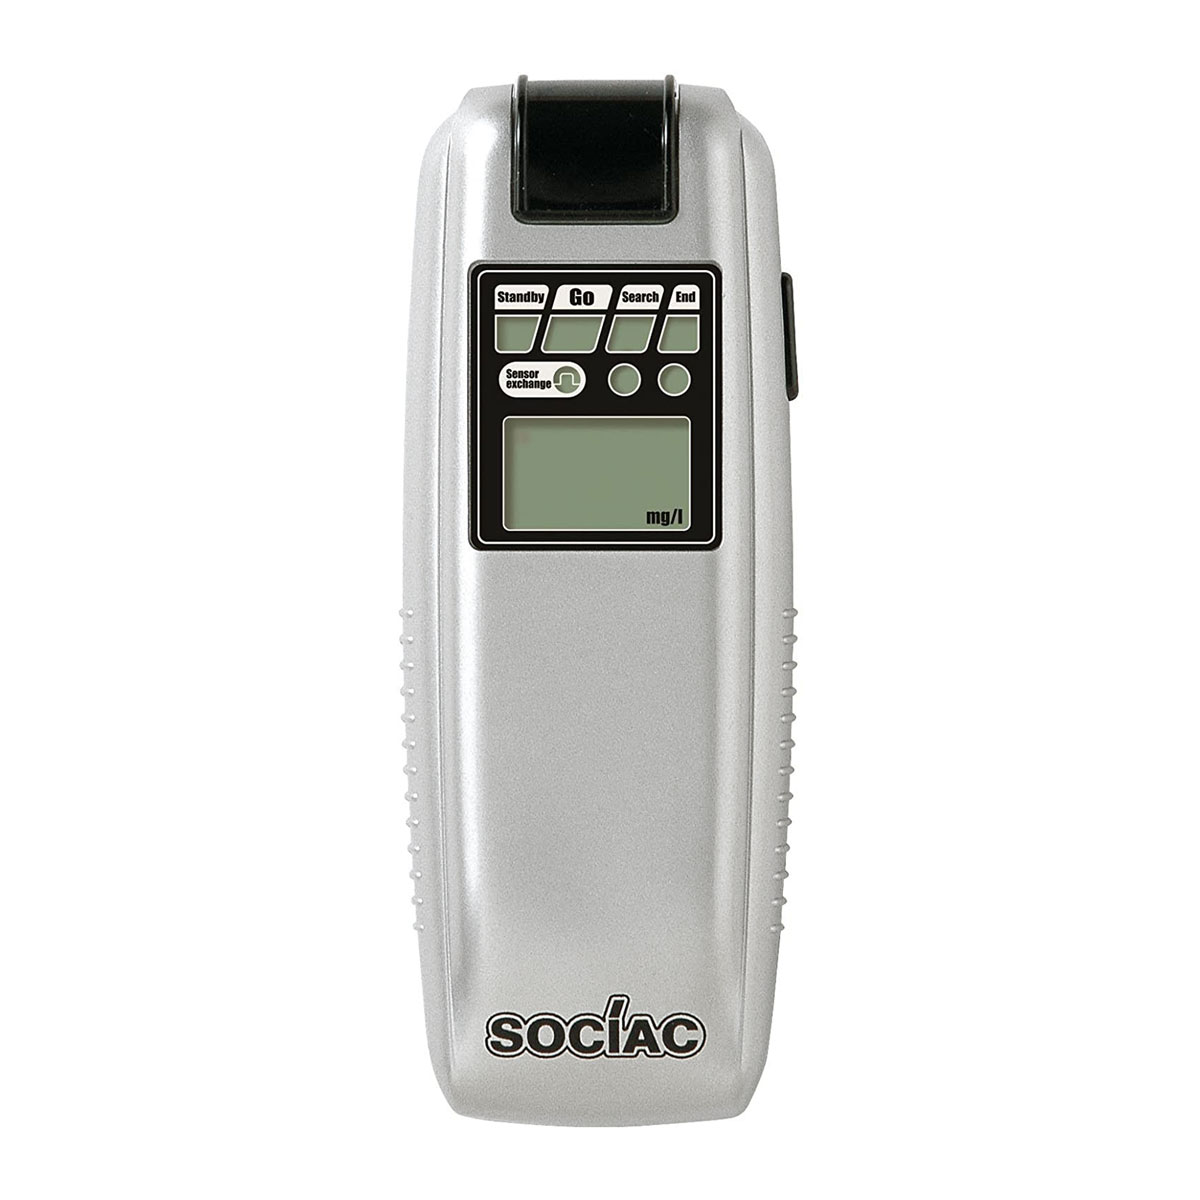 呼気中のアルコール濃度を0.01mg L単位のデジタル表示 アルコール検知器 アルコールチェッカー 超熱 ソシアック 与え 高精度 SC-103 業務用 送料無料